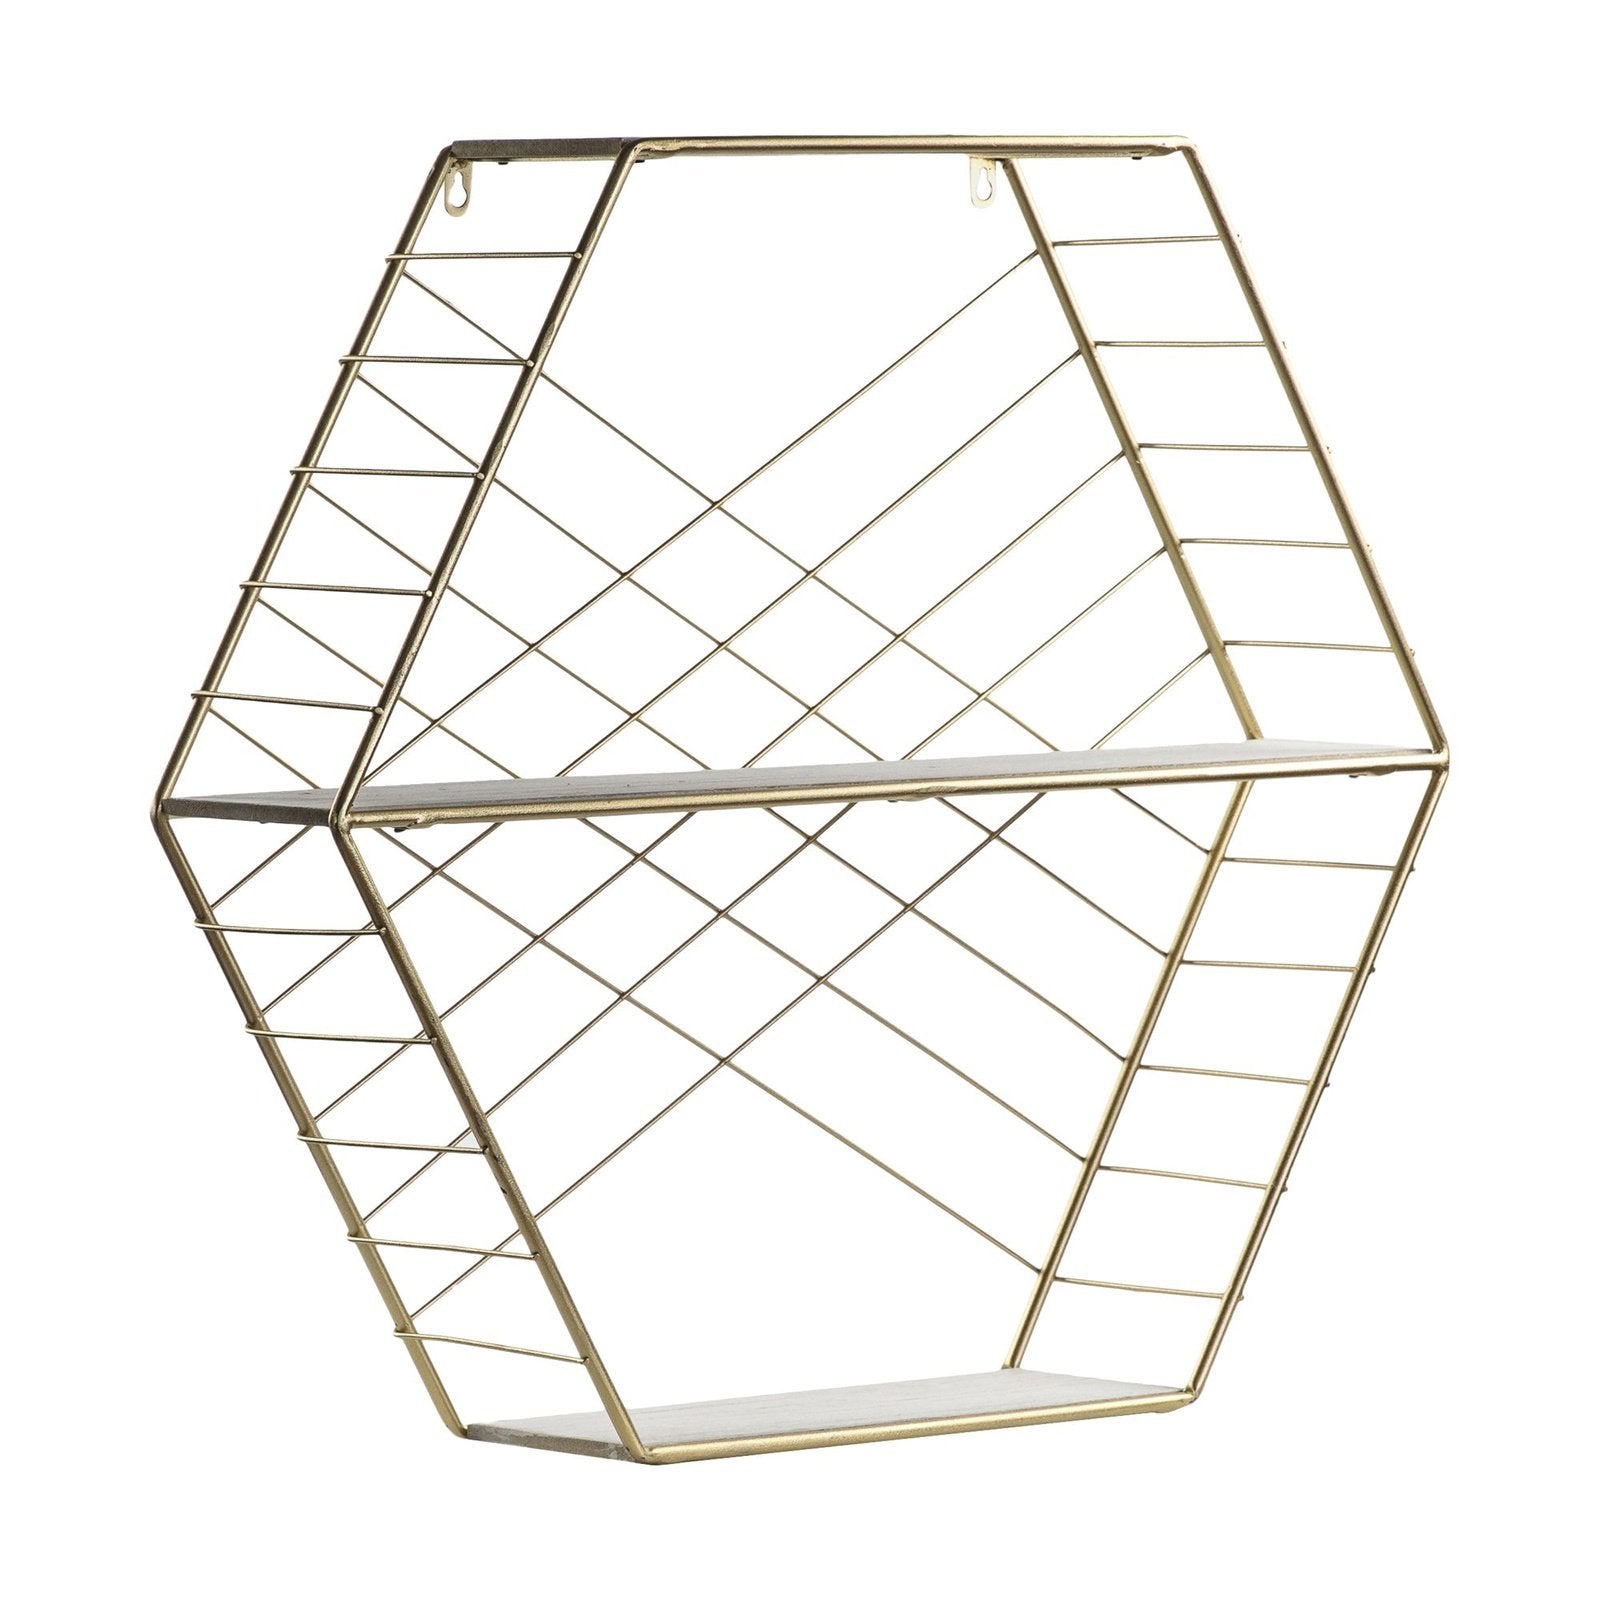 Thorpe Gold Shelving Unit - 2 Shelves - Geometric Design